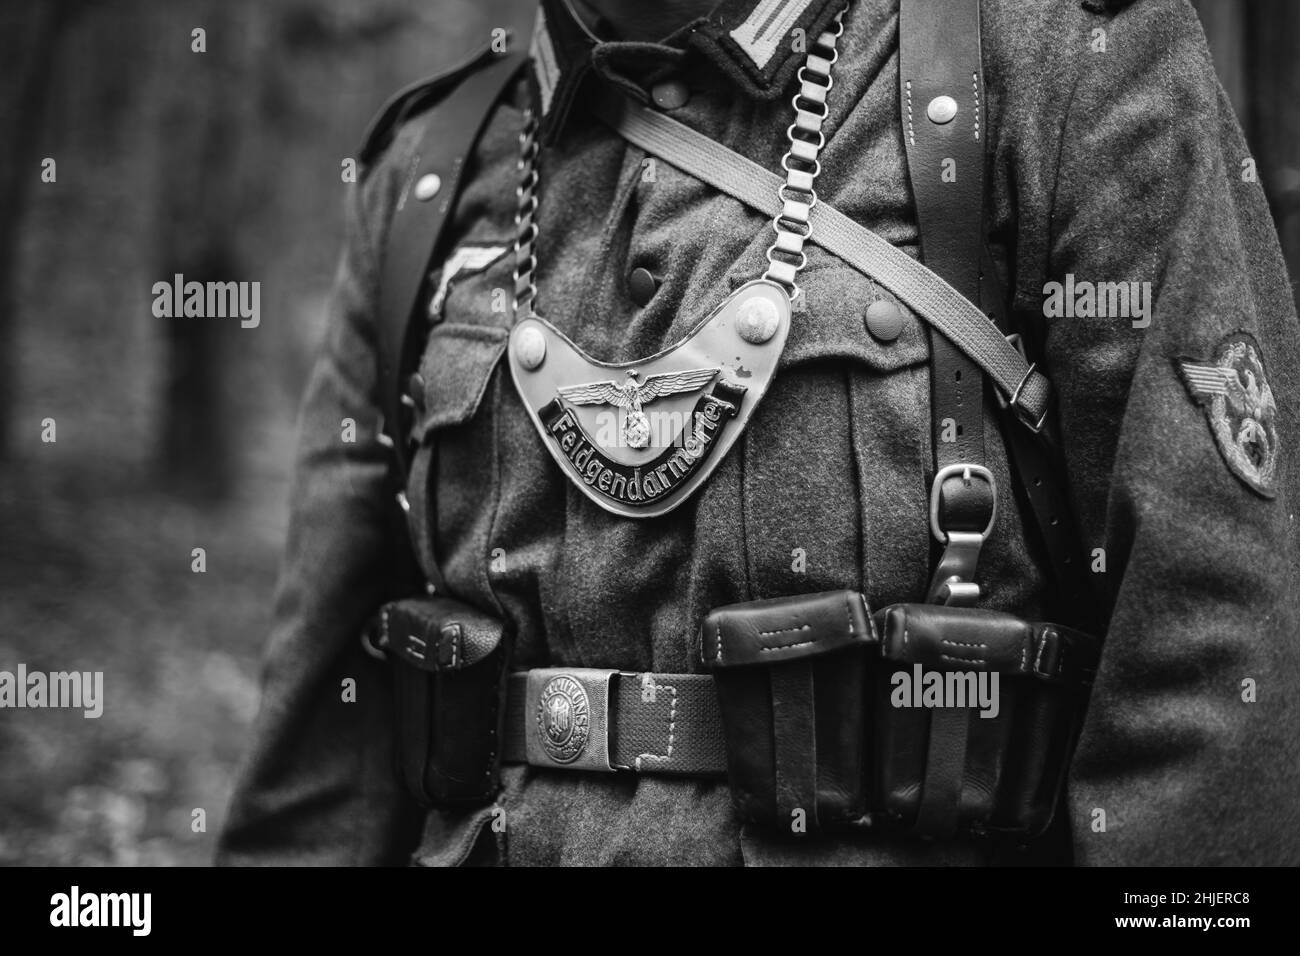 Re-enattore vestito come seconda guerra mondiale Wehrmacht unità militare di polizia - Feldgendarm. Gorget distintivo è visibile. L'Iscrizione su Gorget Foto Stock